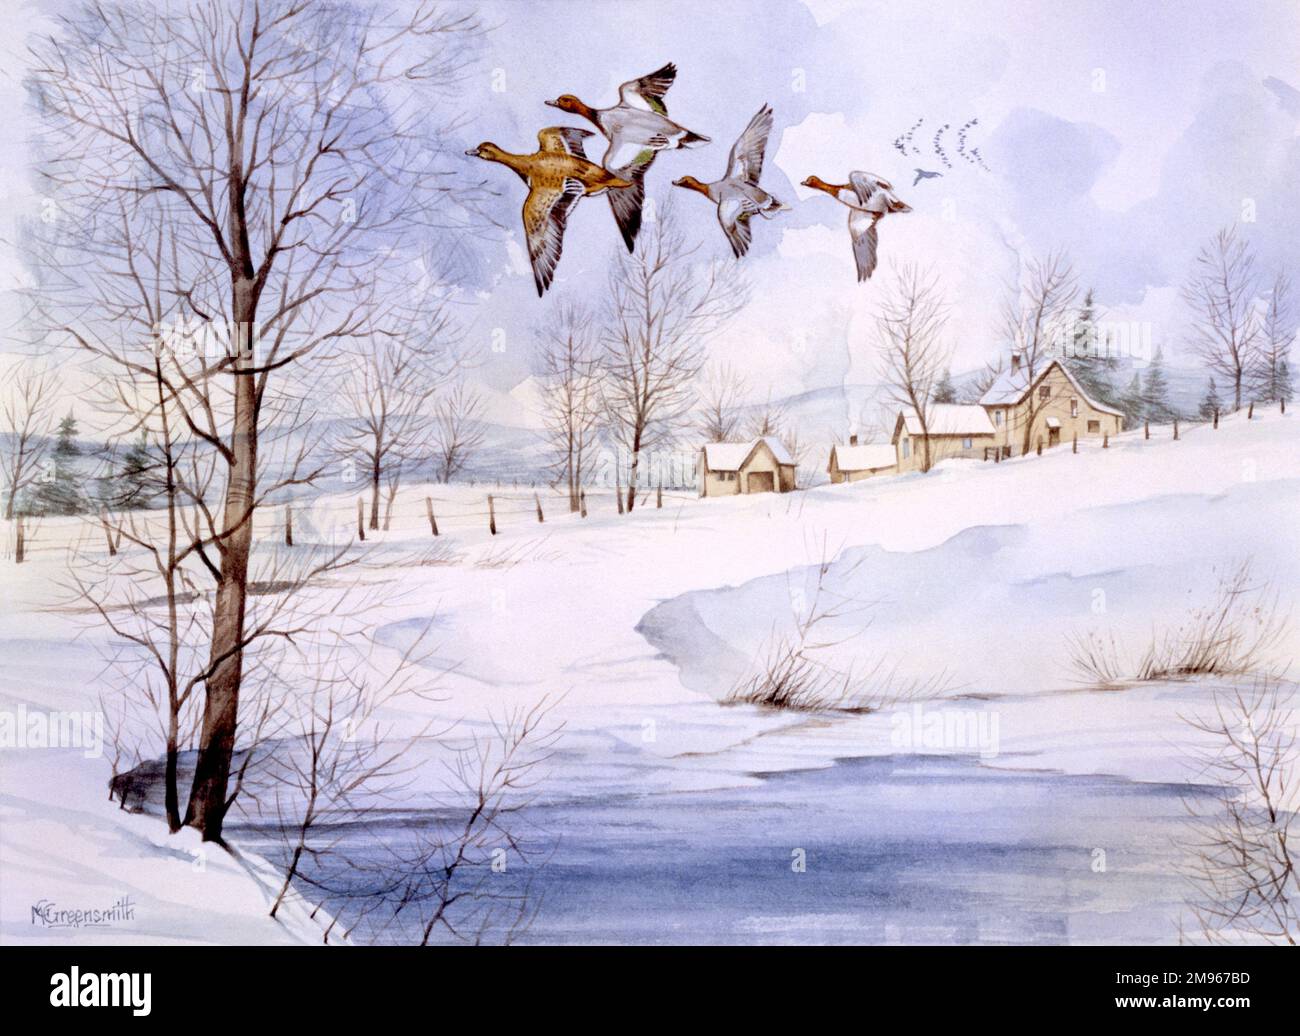 Eine schneebedeckte Landschaft im Winter mit vier fliegenden Enten. Stockfoto